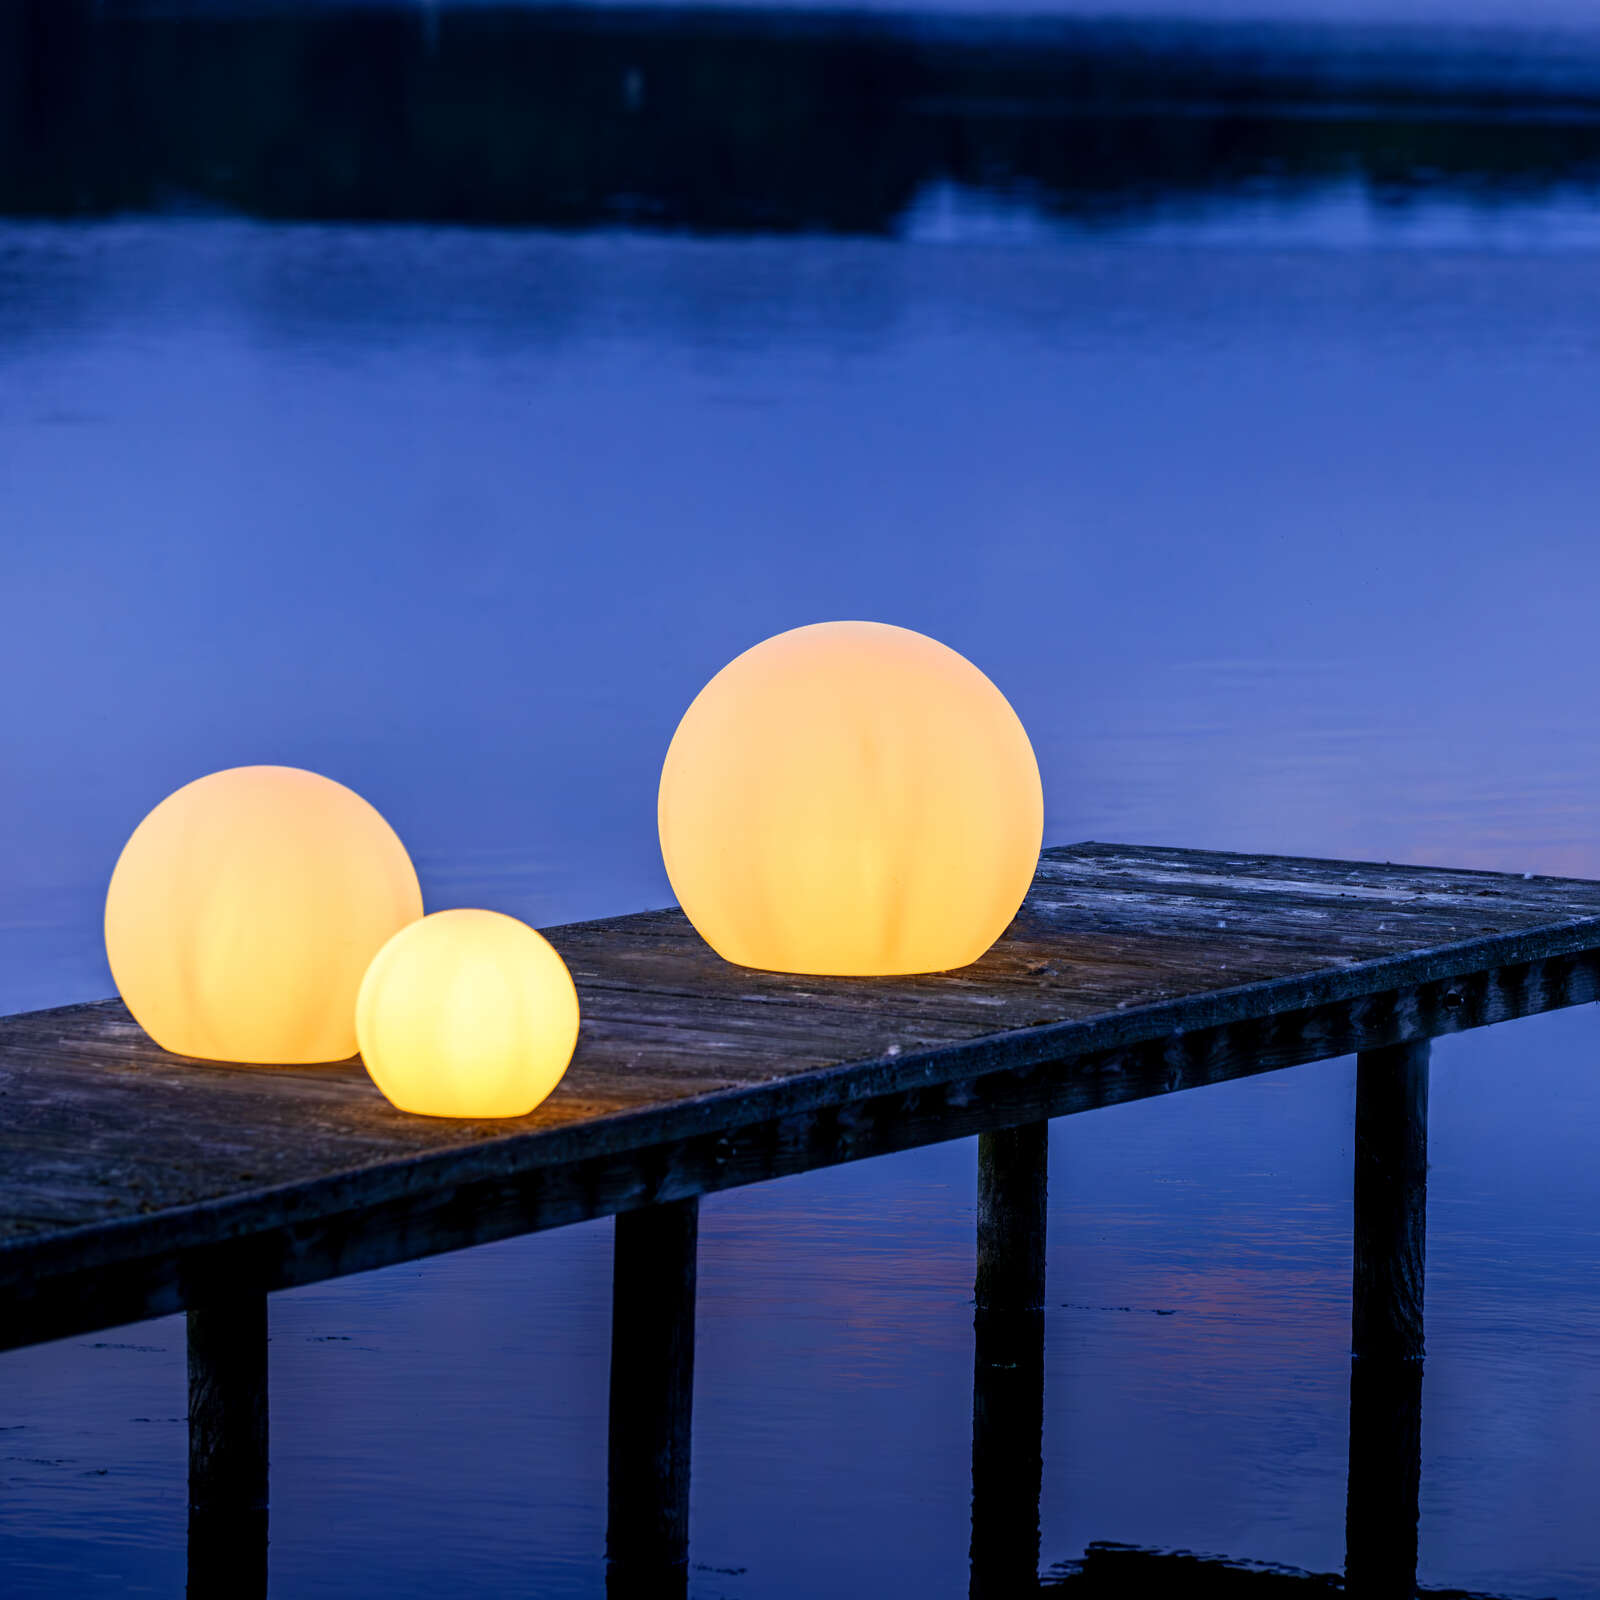             Plastic outdoor light globe - Hans 4 - White
        